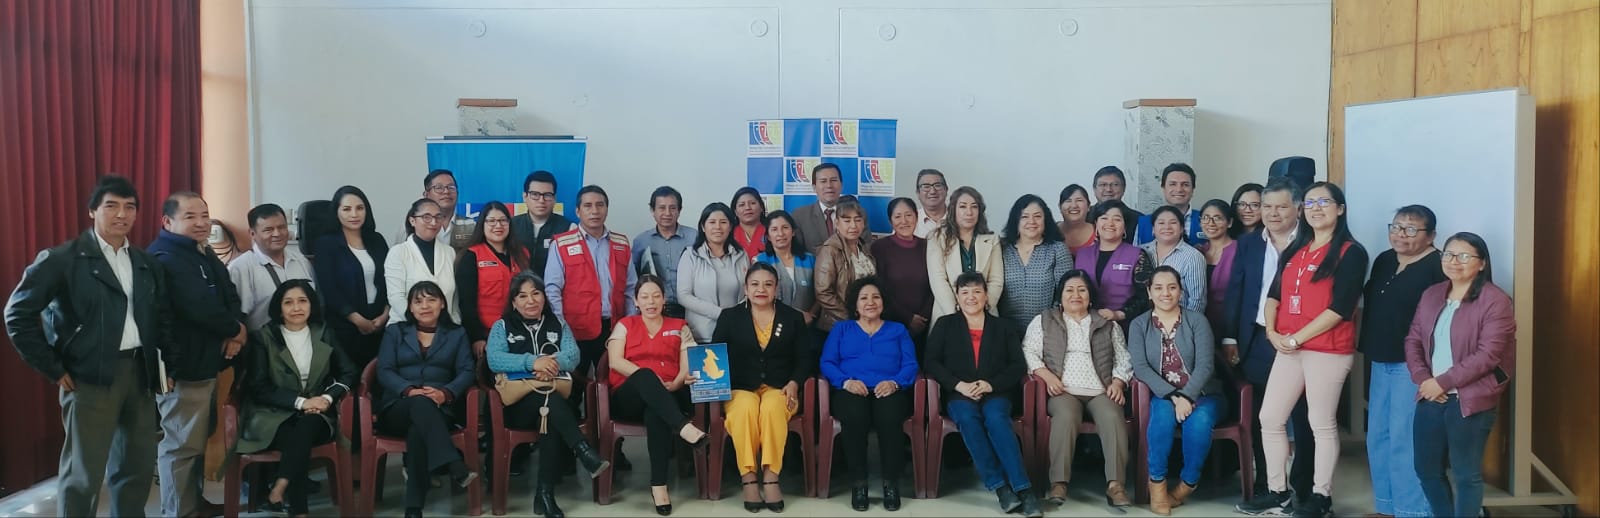 Estuvimos presentes en la Asamblea General de la Mesa de Concertación Ayacucho